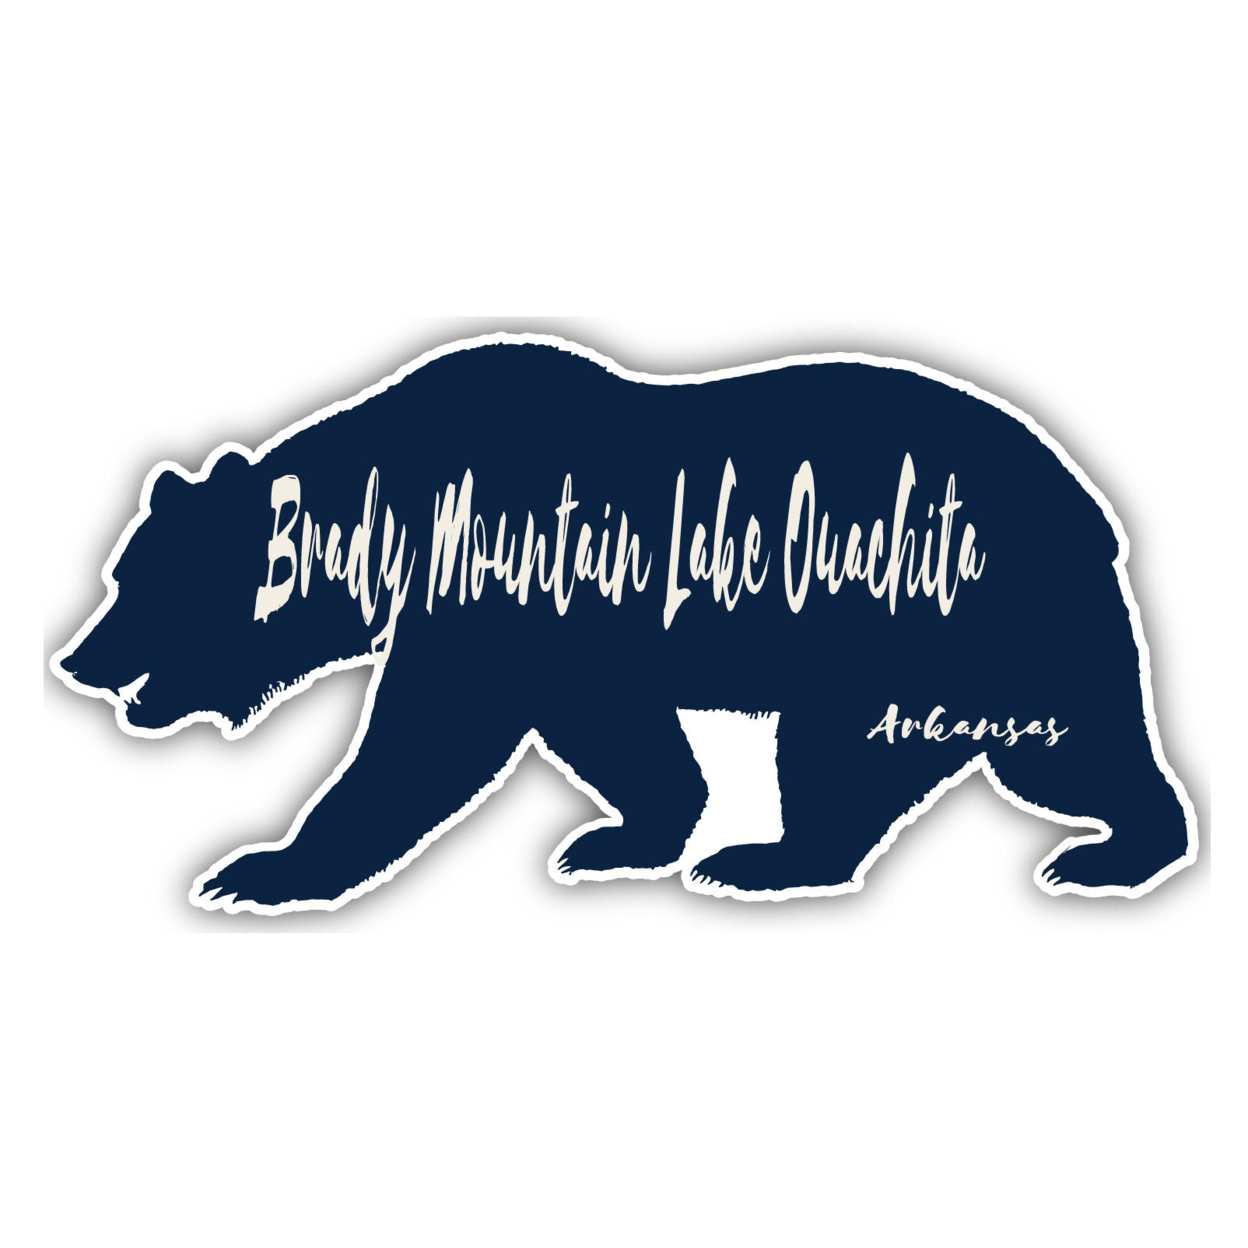 Brady Mountain Lake Ouachita Arkansas Souvenir Decorative Stickers (Choose Theme And Size) - Single Unit, 4-Inch, Tent